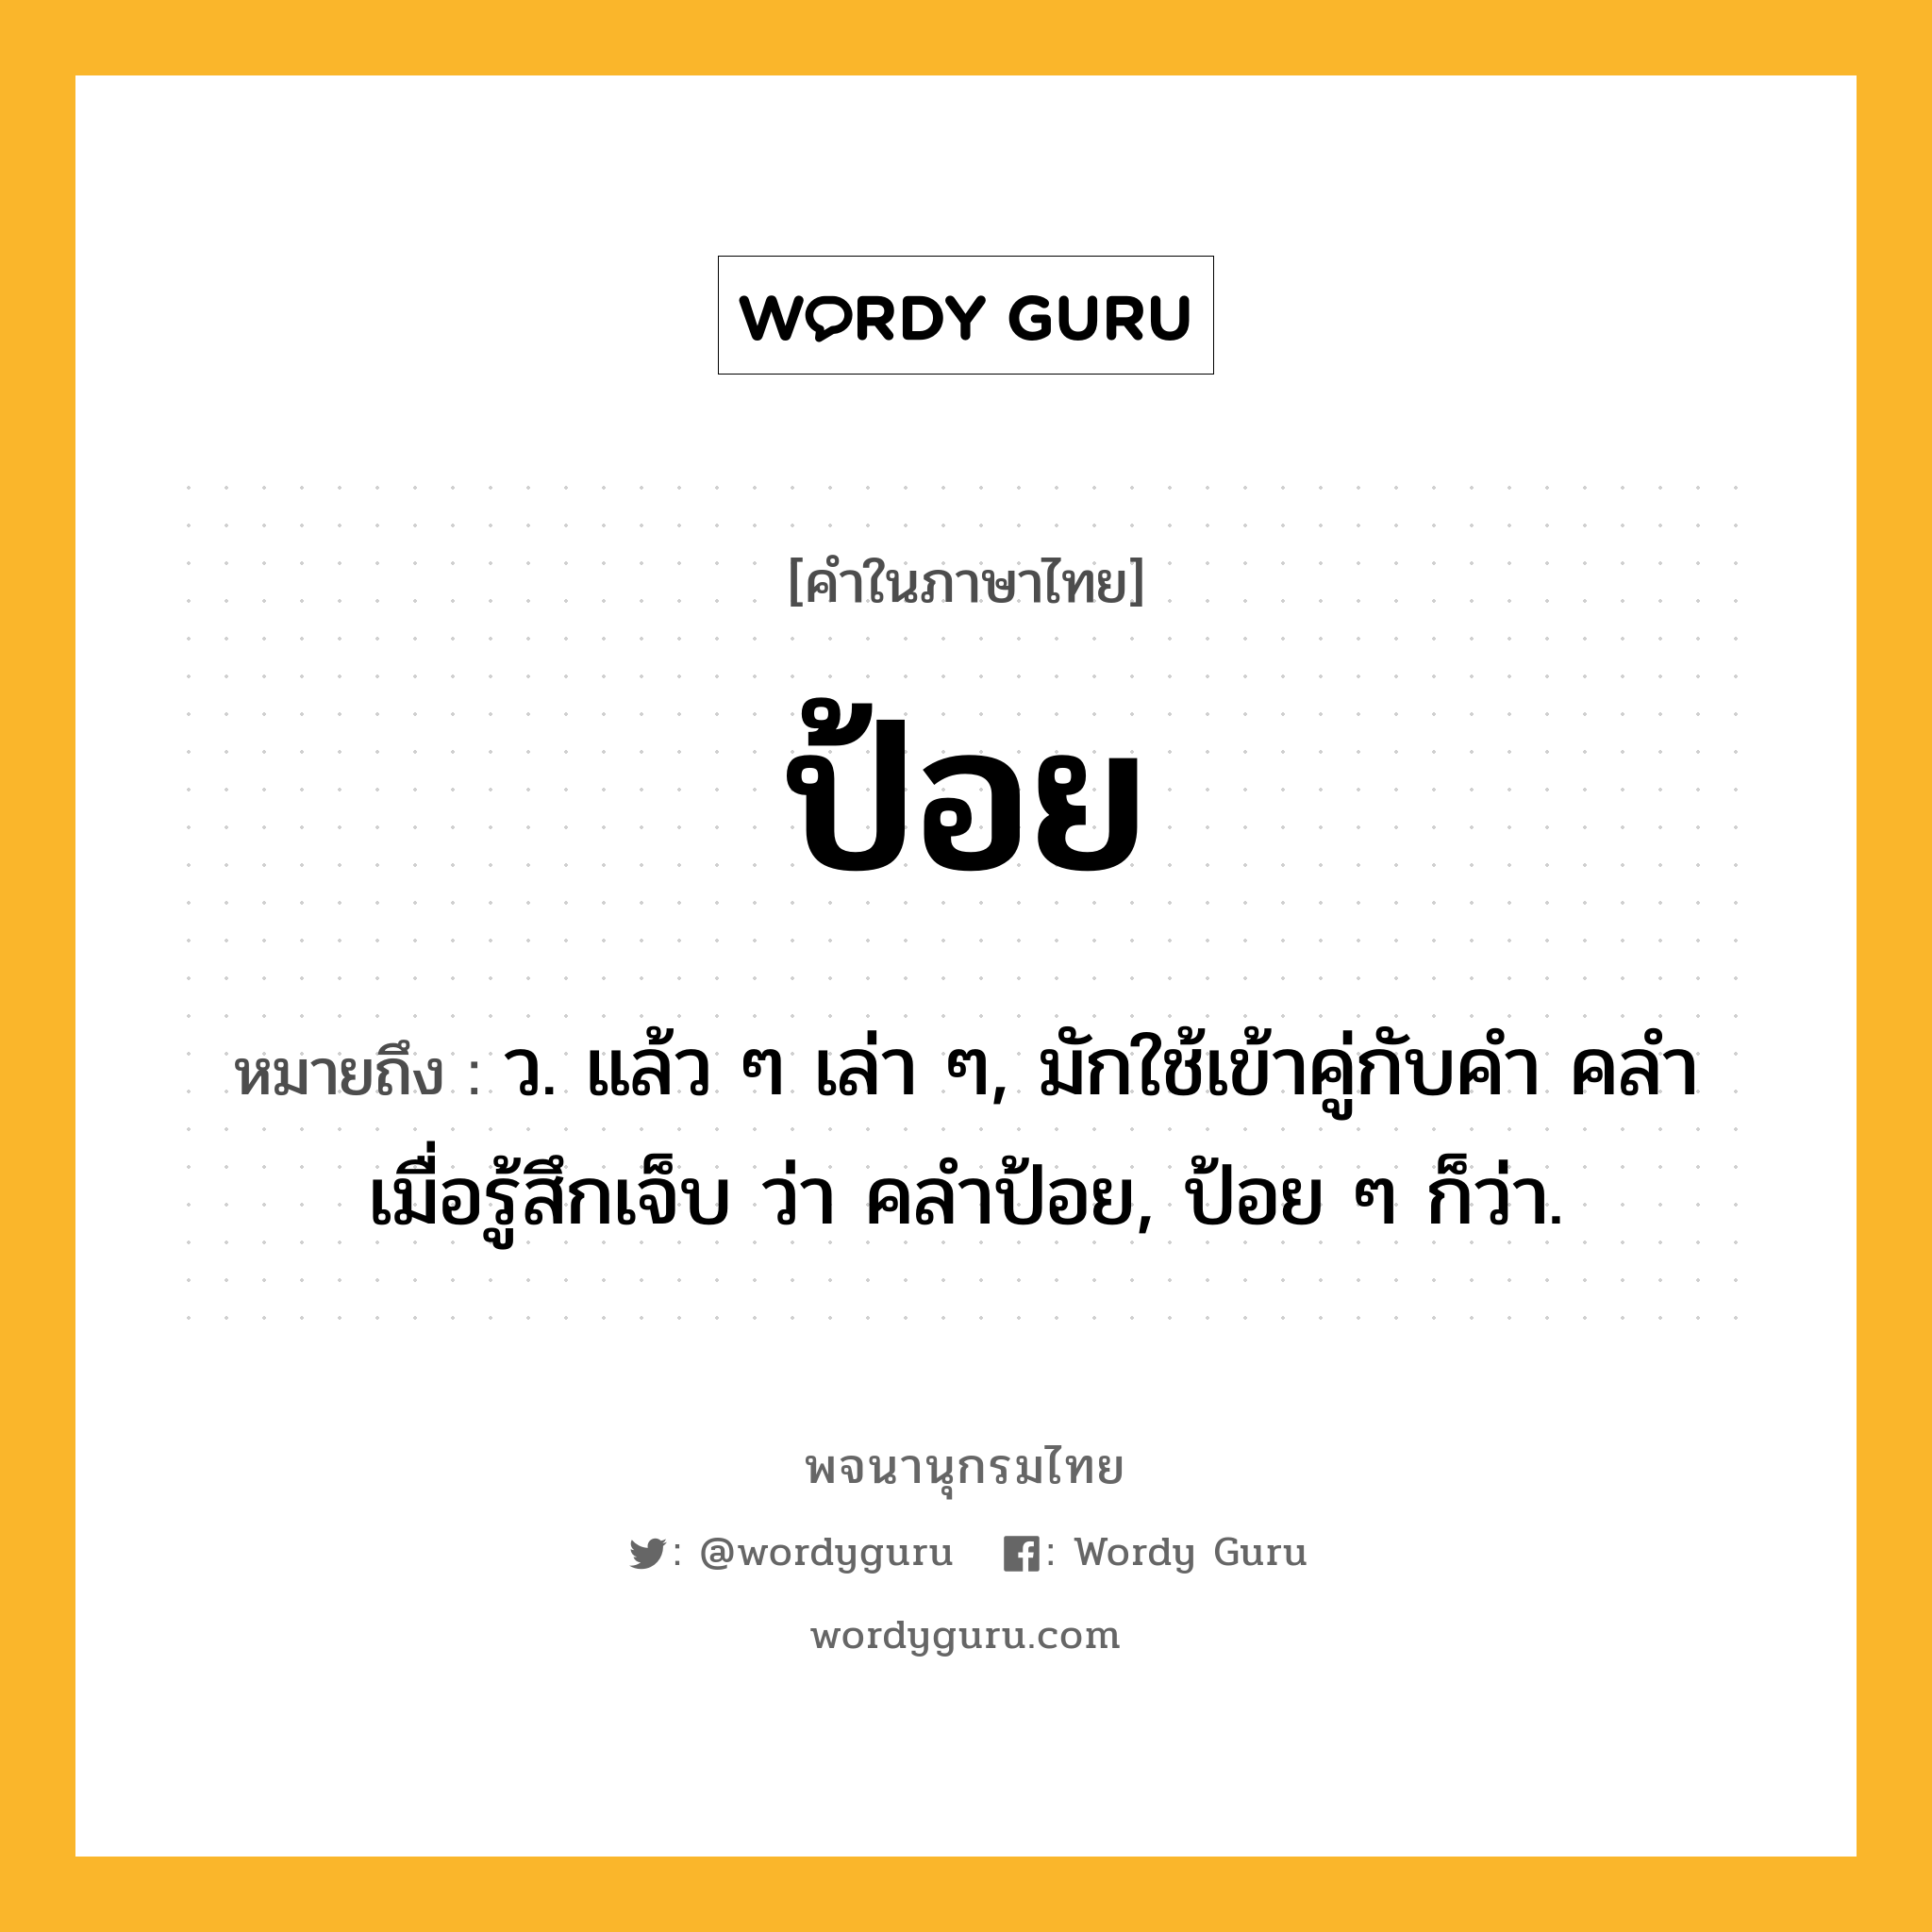 ป้อย หมายถึงอะไร?, คำในภาษาไทย ป้อย หมายถึง ว. แล้ว ๆ เล่า ๆ, มักใช้เข้าคู่กับคำ คลํา เมื่อรู้สึกเจ็บ ว่า คลําป้อย, ป้อย ๆ ก็ว่า.